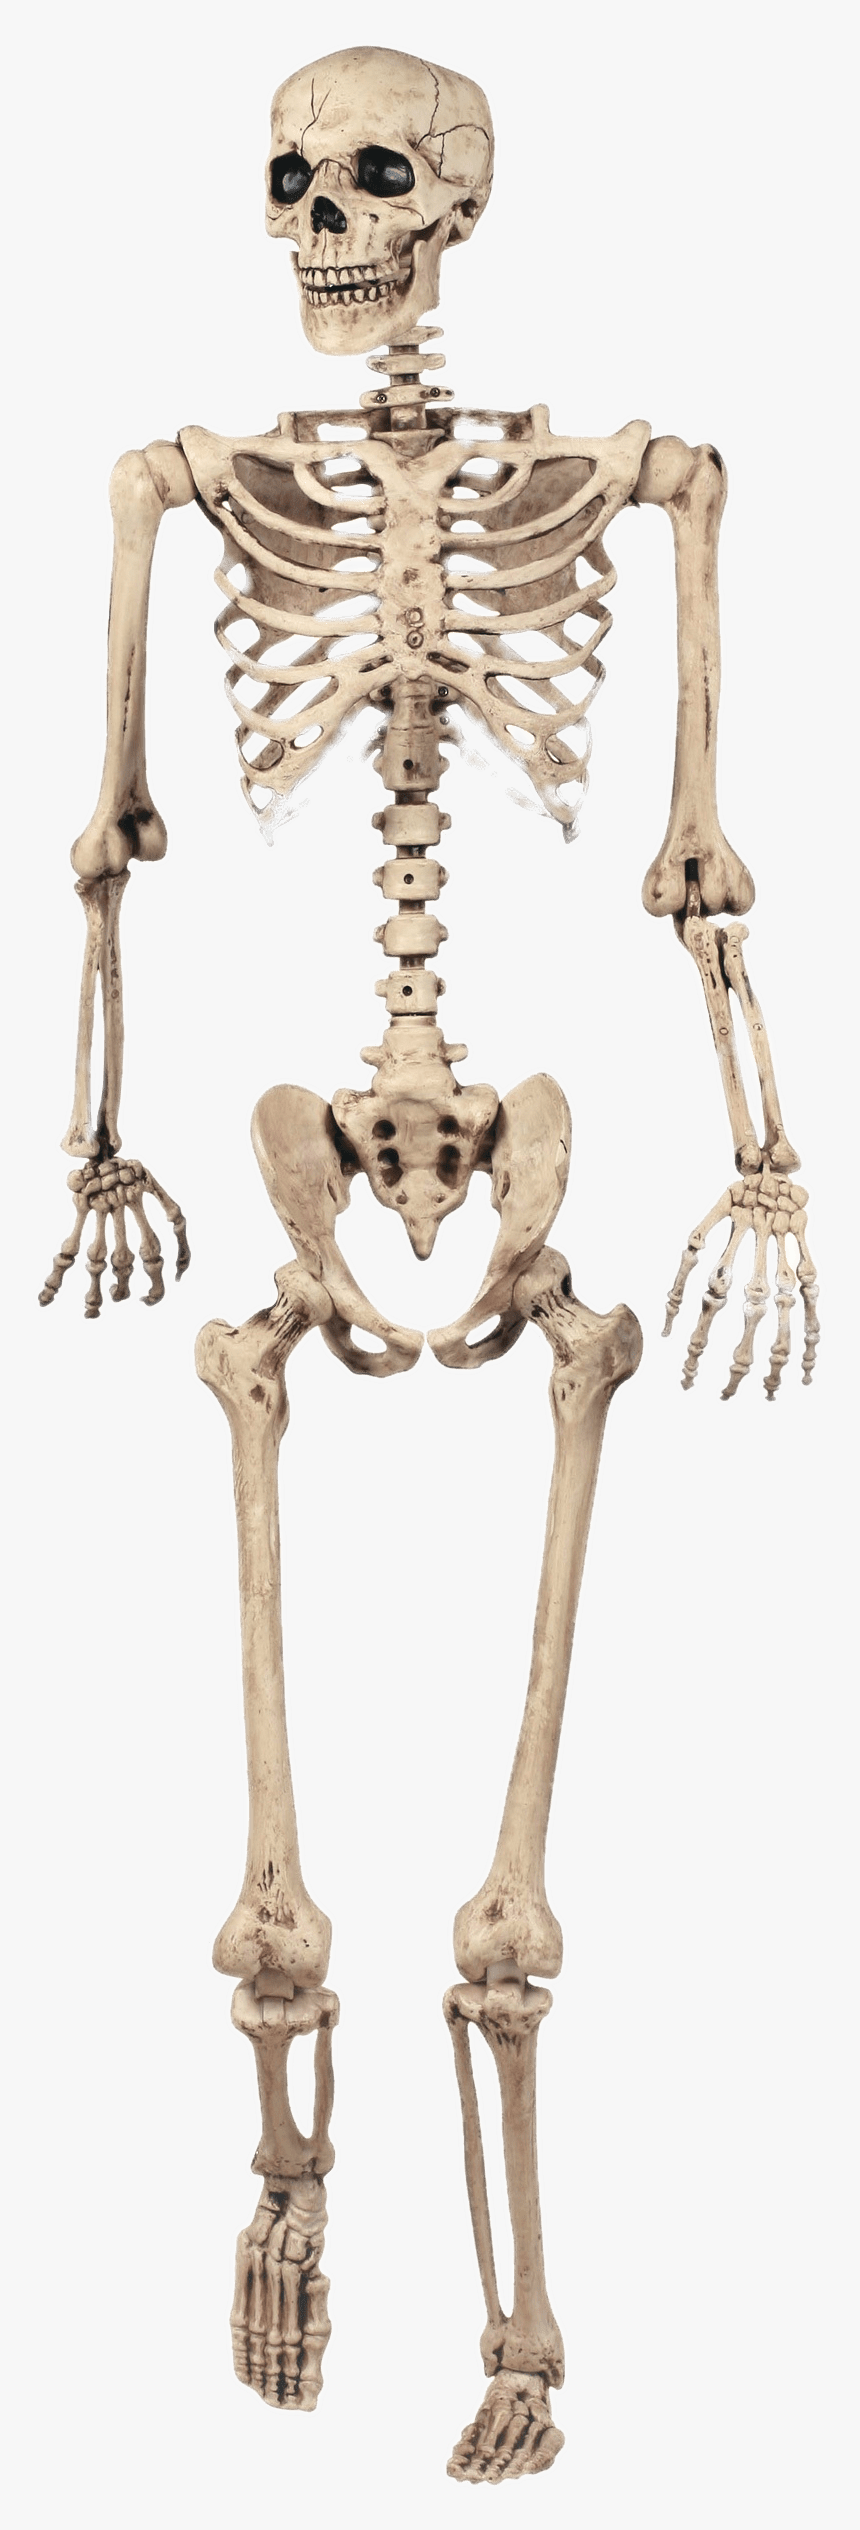 Transparent Femur Png - Halloween Decorations Skeleton, Png Download, Free Download